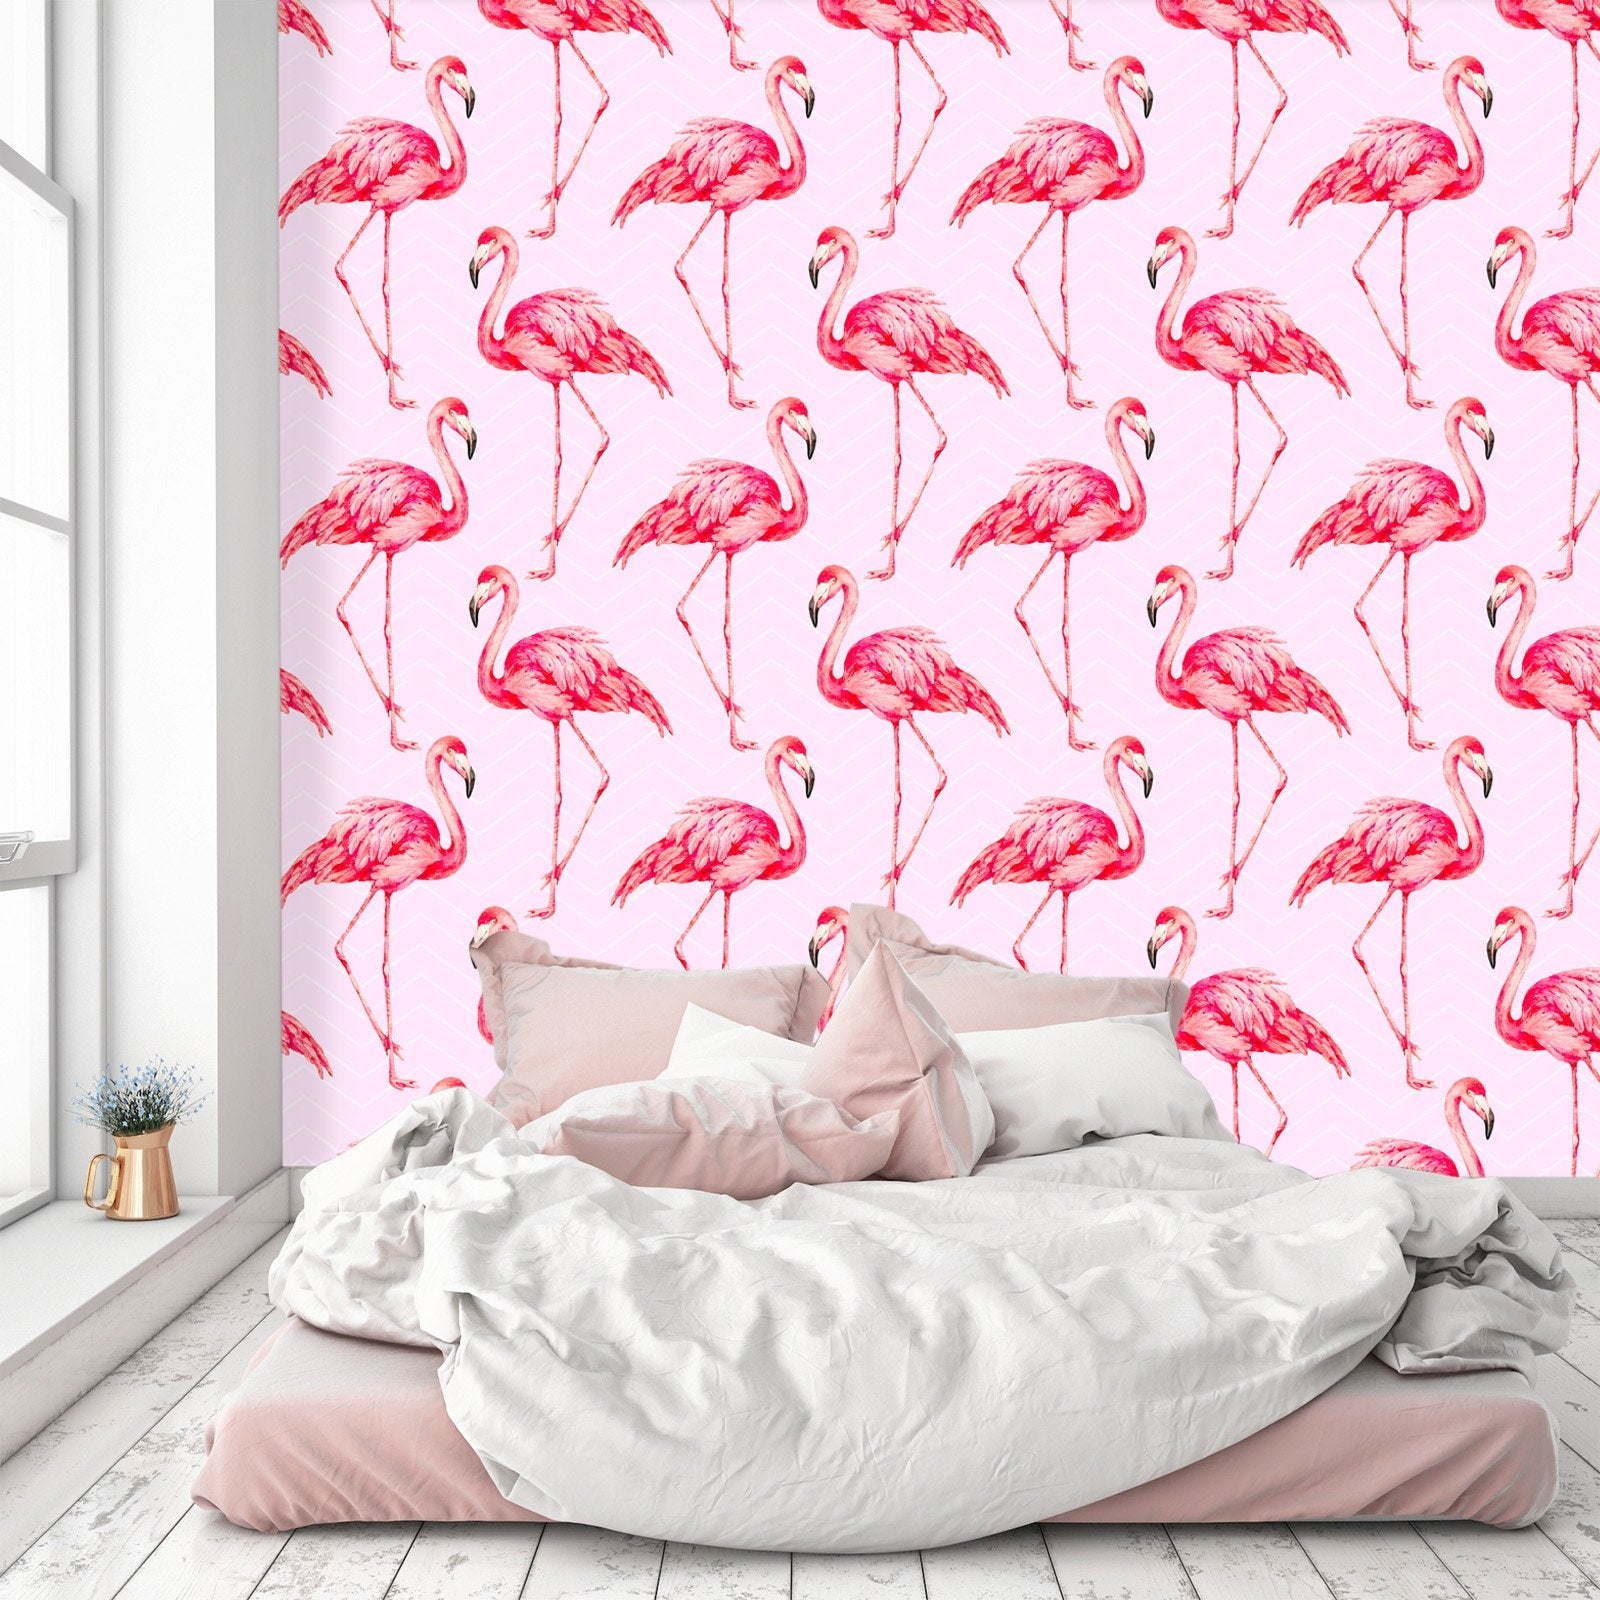 3D Red Flamingo 456 Wallpaper AJ Wallpaper 